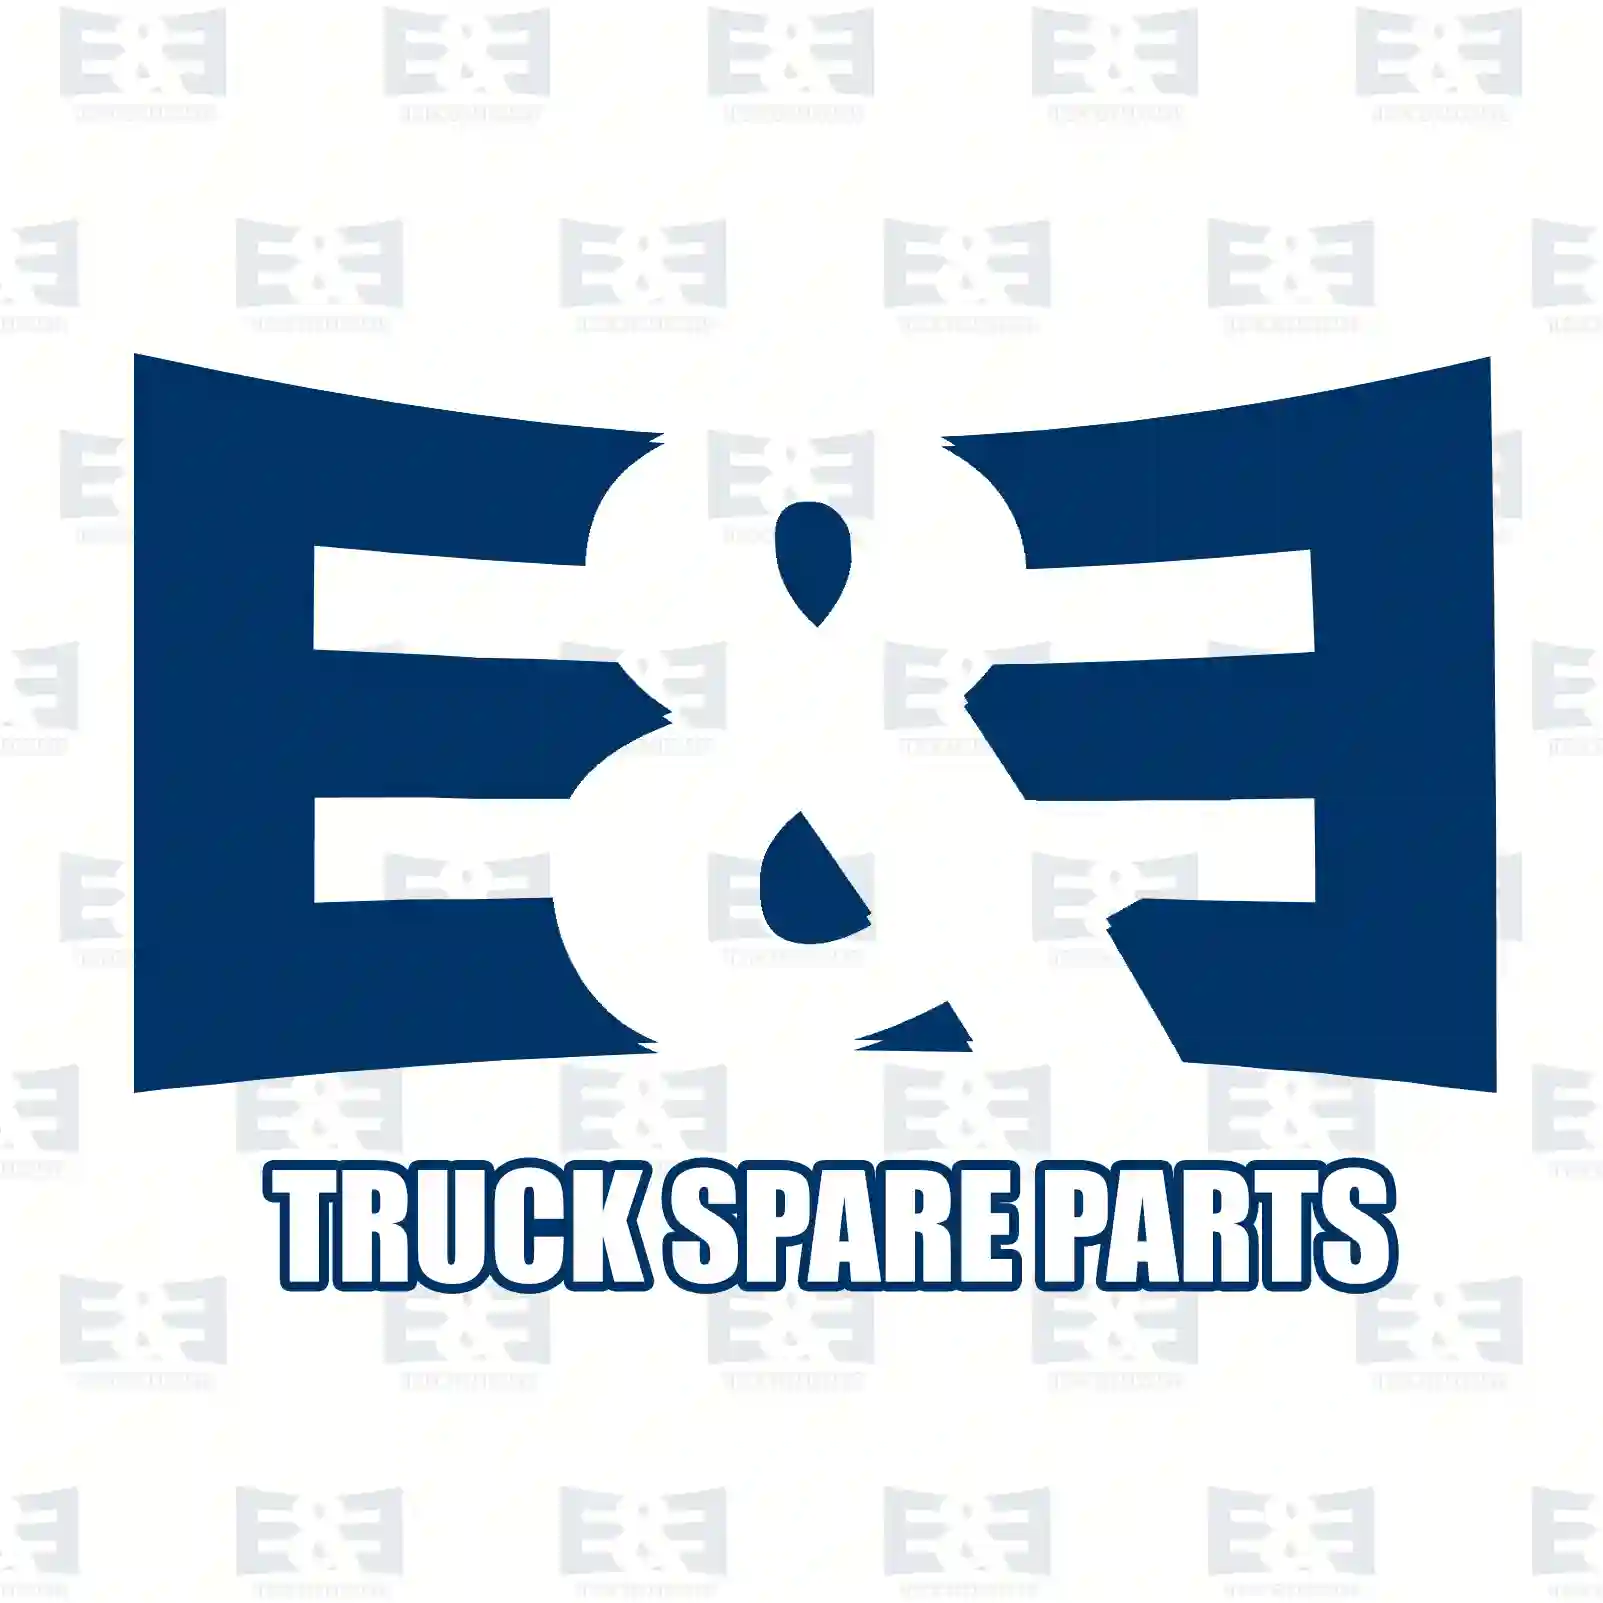  Bowden cable, parking brake || E&E Truck Spare Parts | Truck Spare Parts, Auotomotive Spare Parts